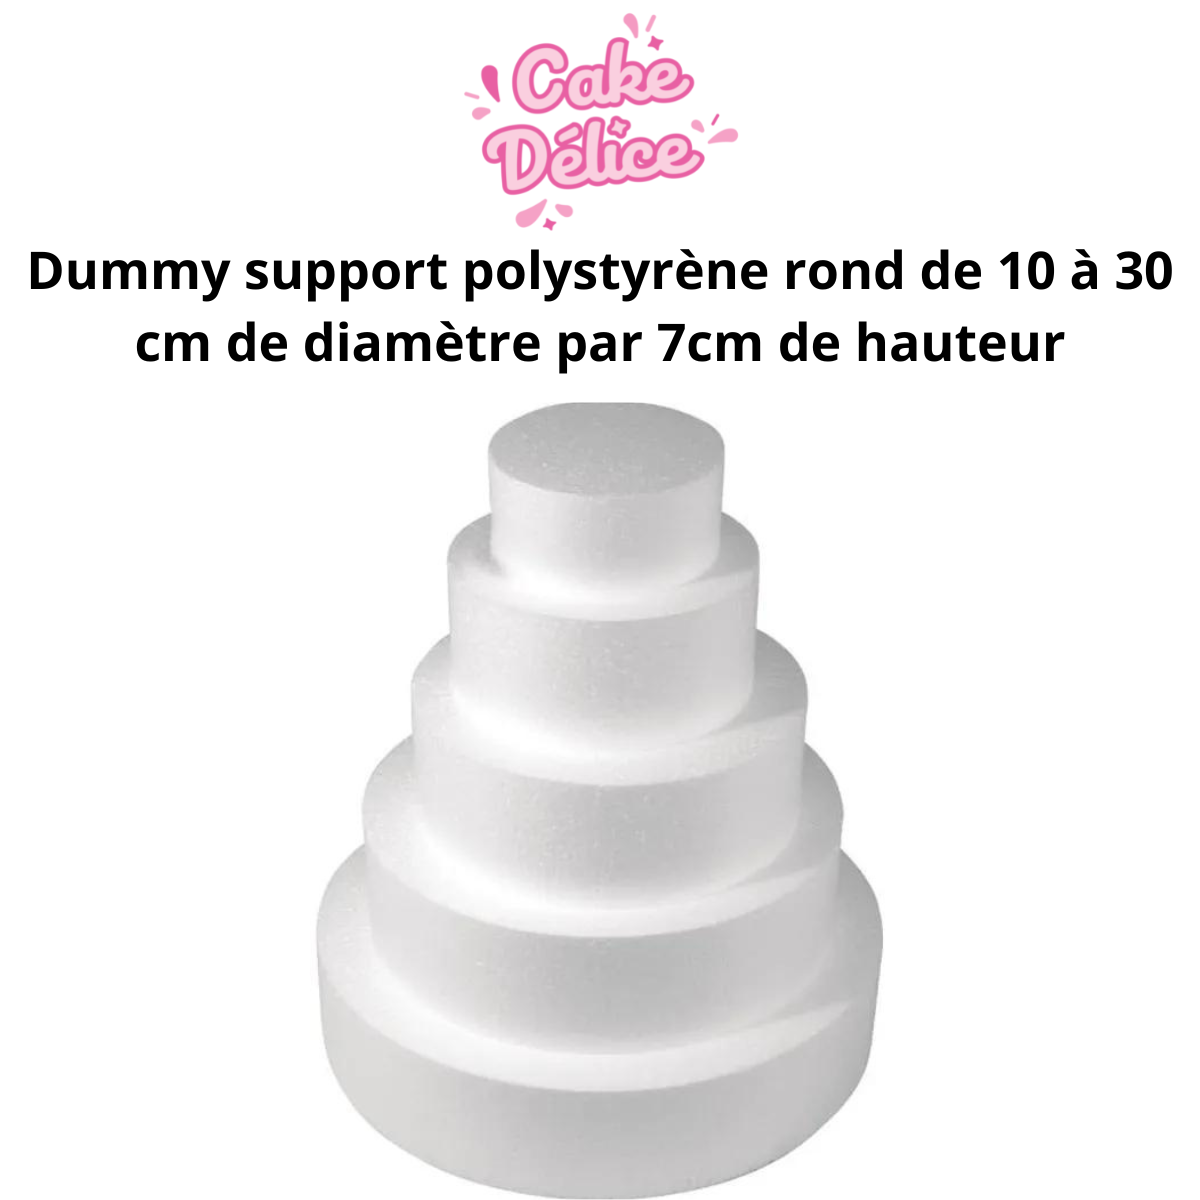 Dummy support polystyrène rond de 10 à 30 cm de diamètre par 7cm de